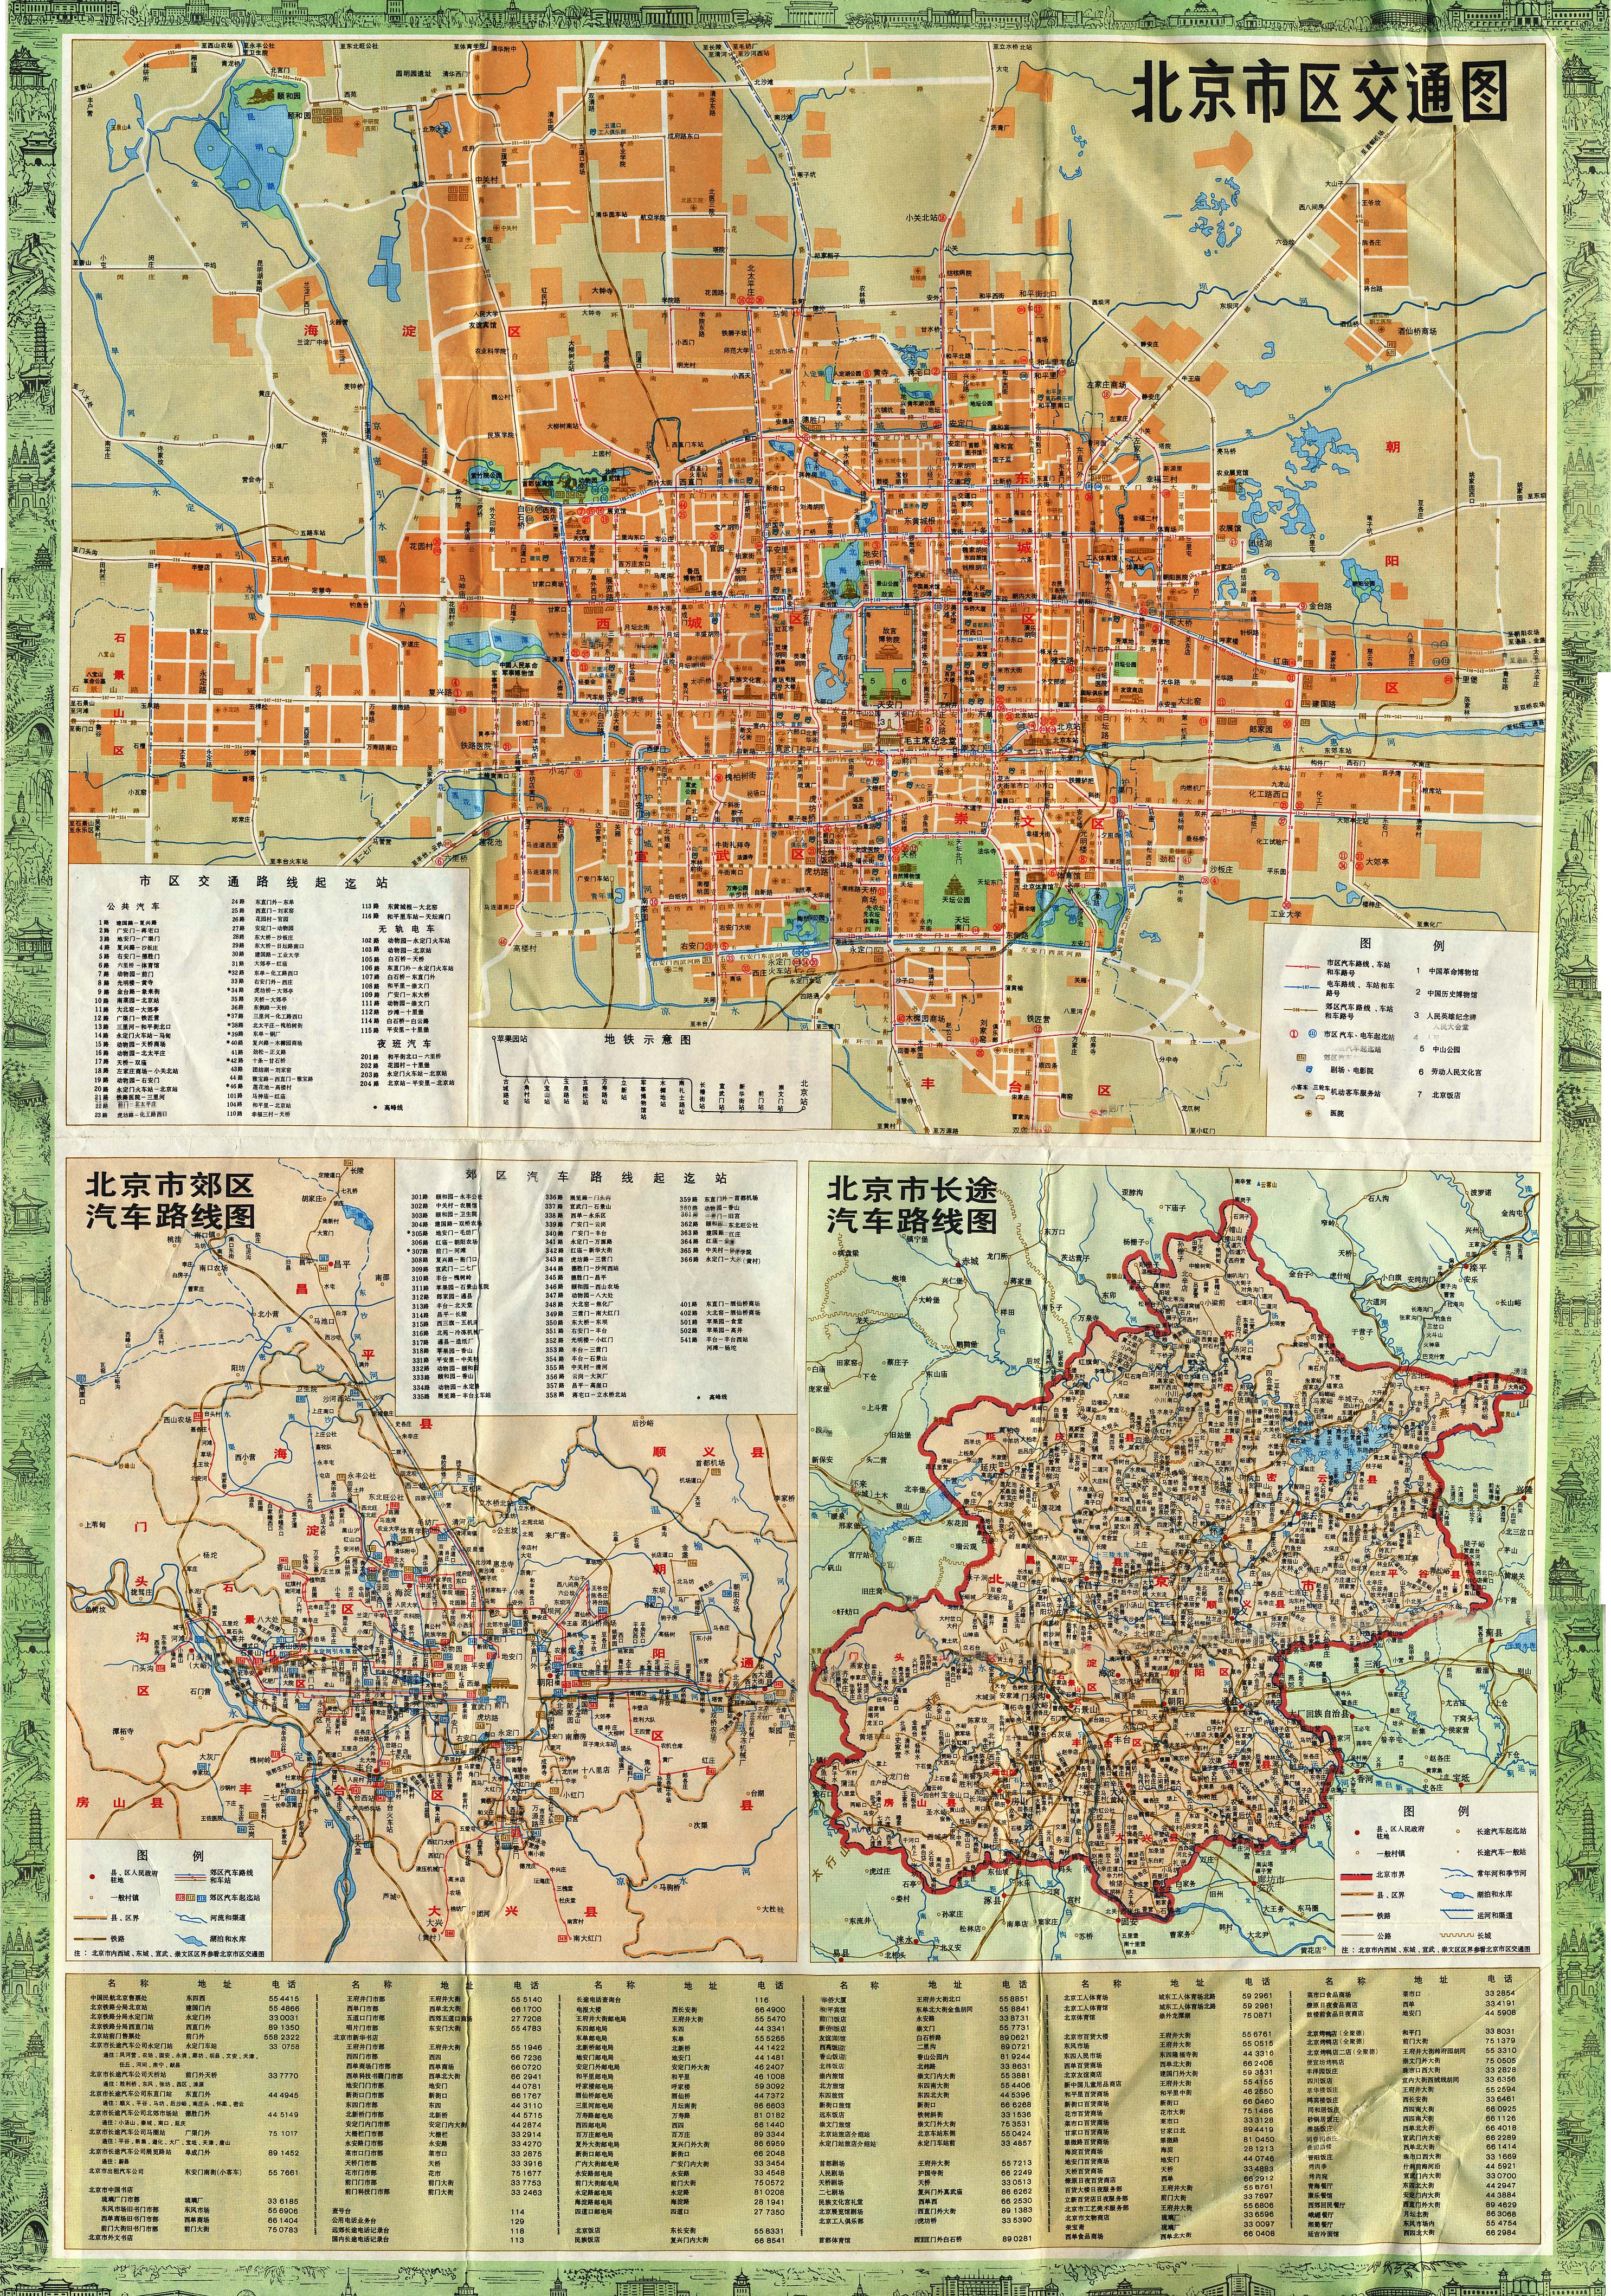 【资料】八十年代北京公交线路